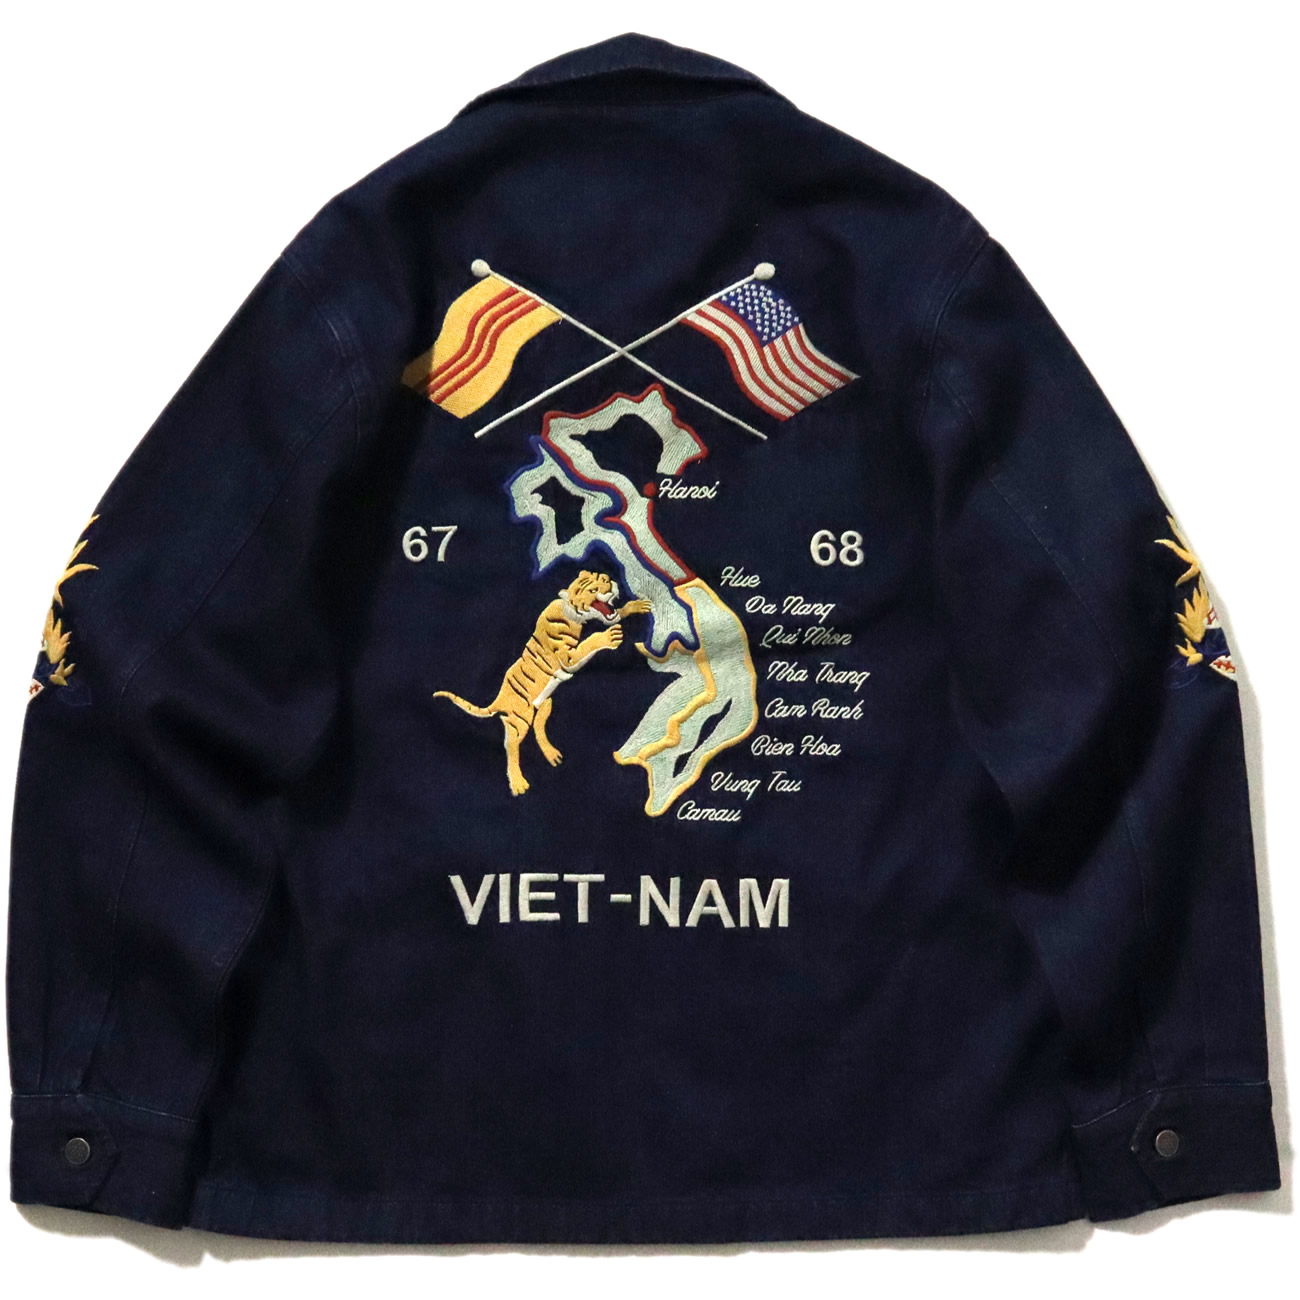 歴史的な名作にデニム生地を組み合わせた『デニム ベトナム ジャケット